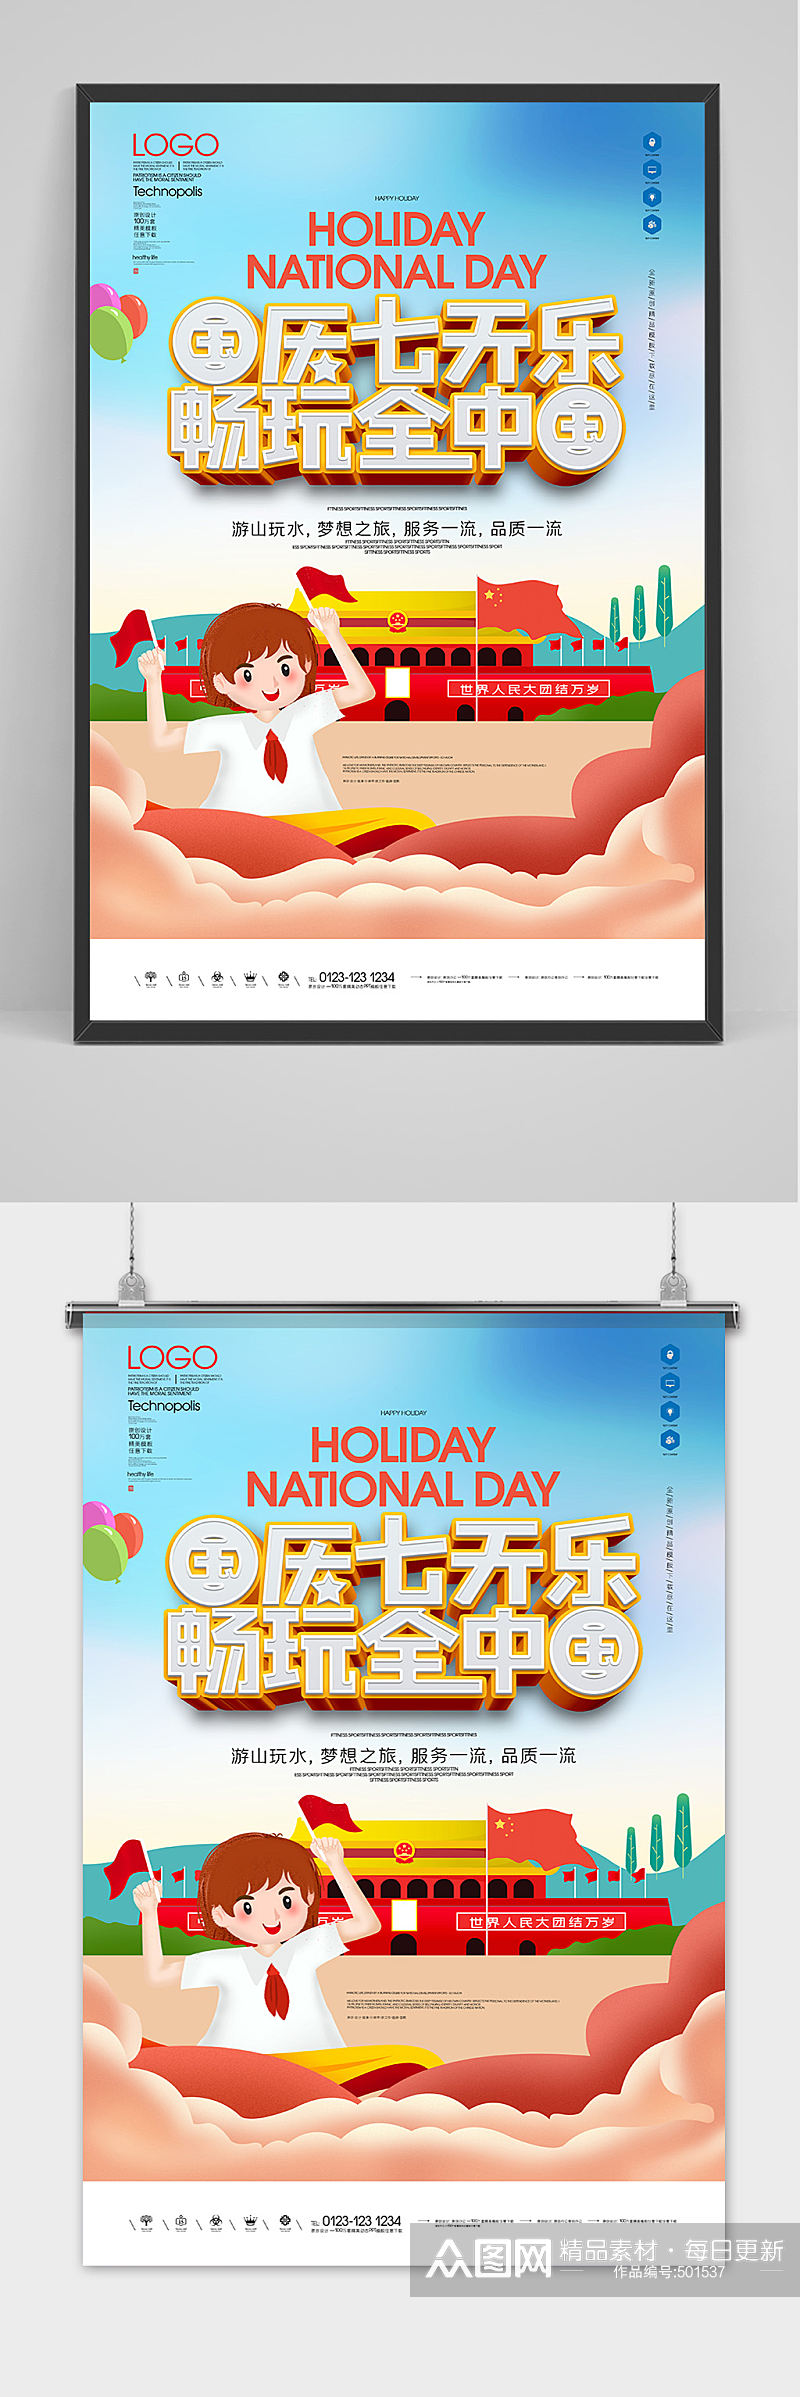 国庆七天乐原创宣传海报模板设计素材